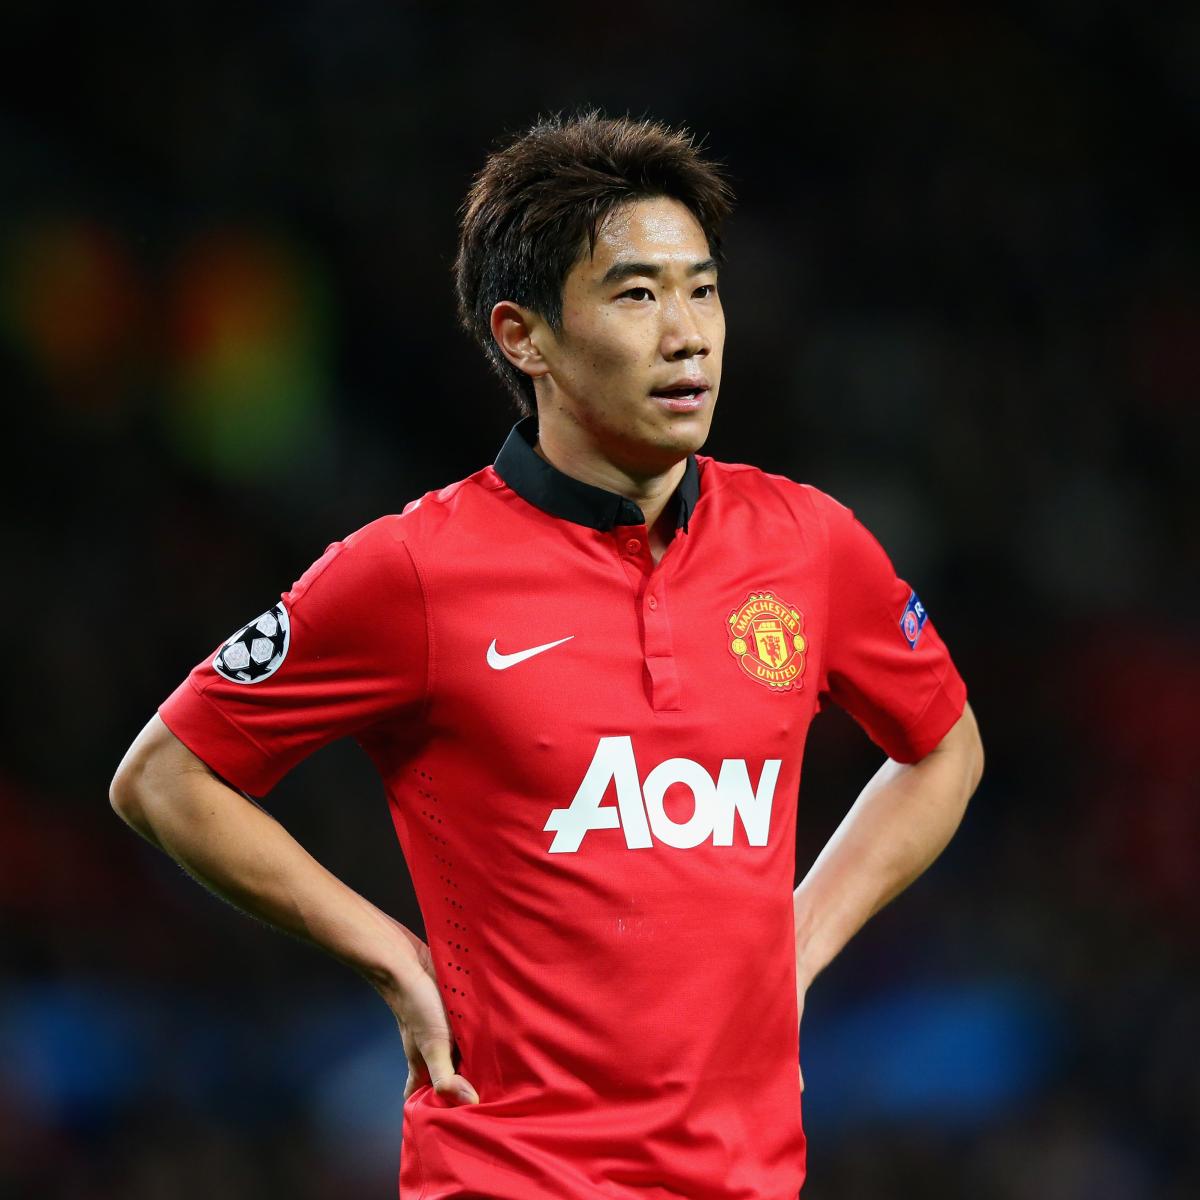 Shinji Kagawa at No. 10 Can Inspire Manchester United Under David Moyes, News, Scores, Highlights, Stats, and Rumors